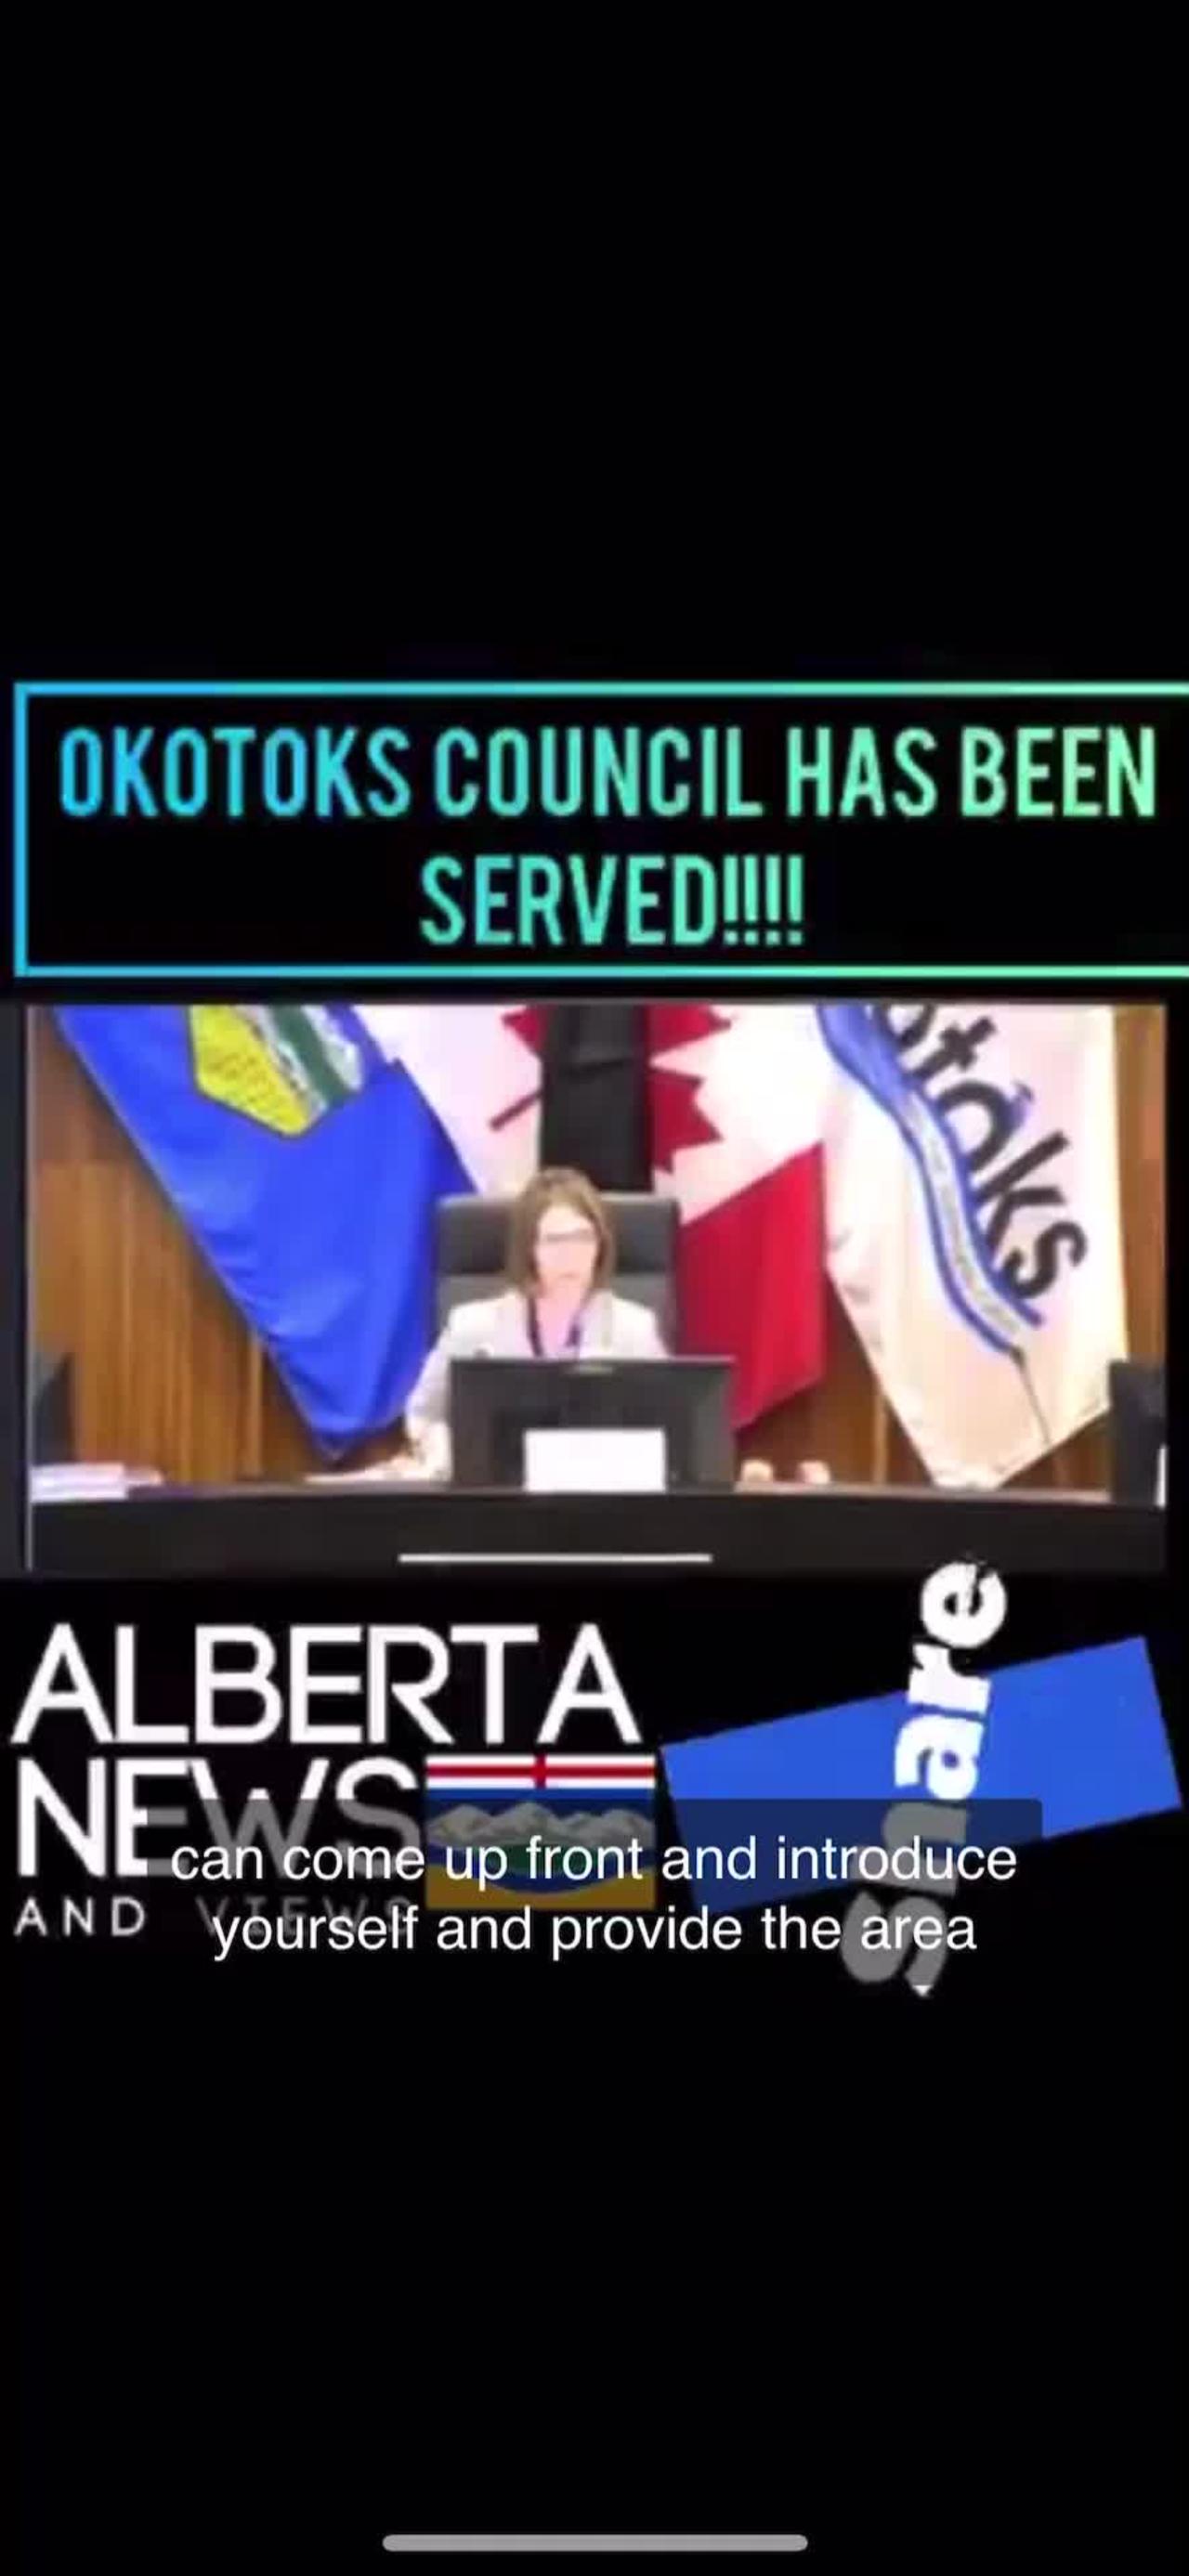 Okotoks Town Council served NoL